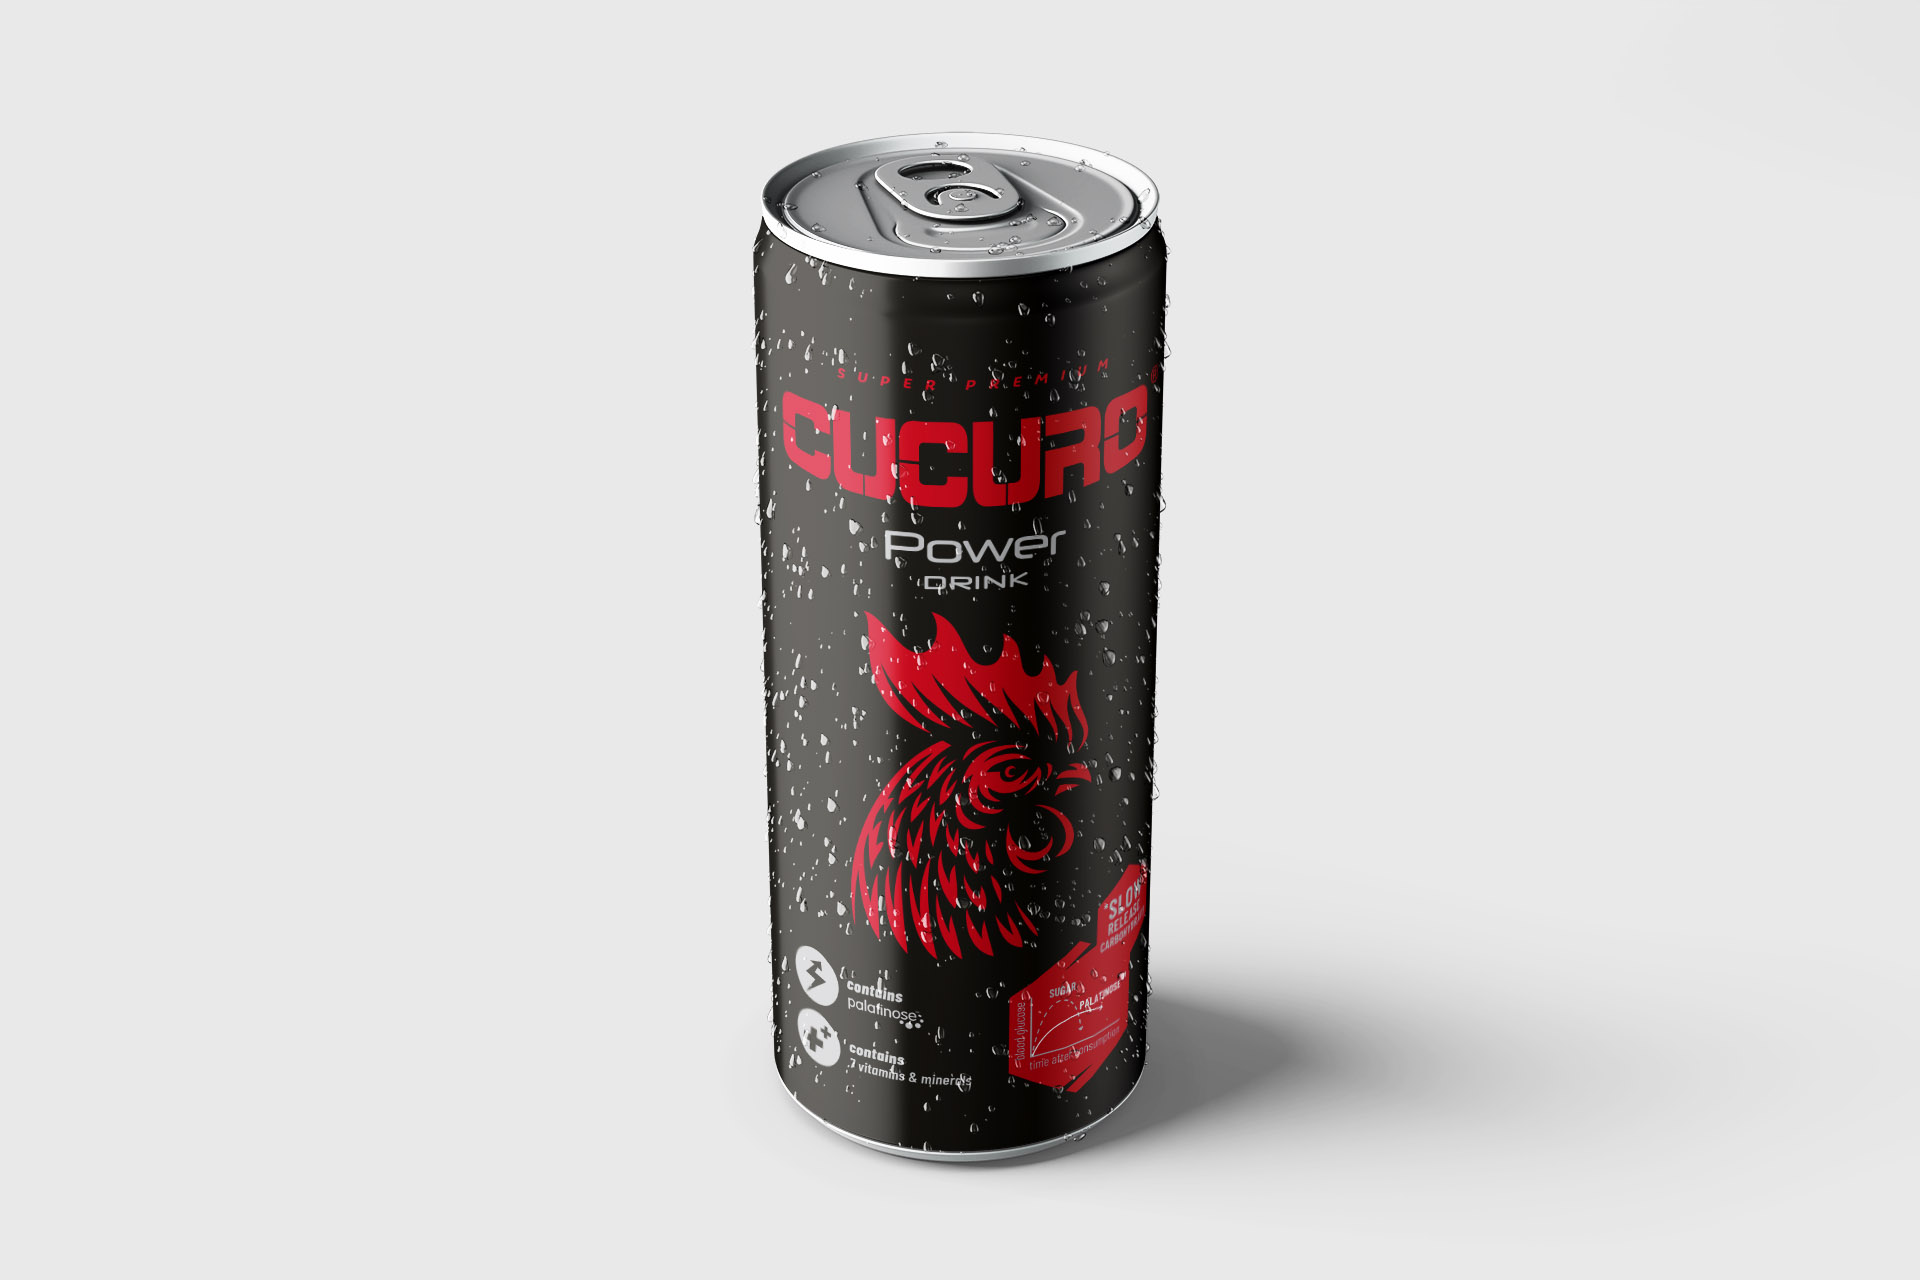 3D-Visualisierungen der Radmans Drink Cucuro Power-Produkten